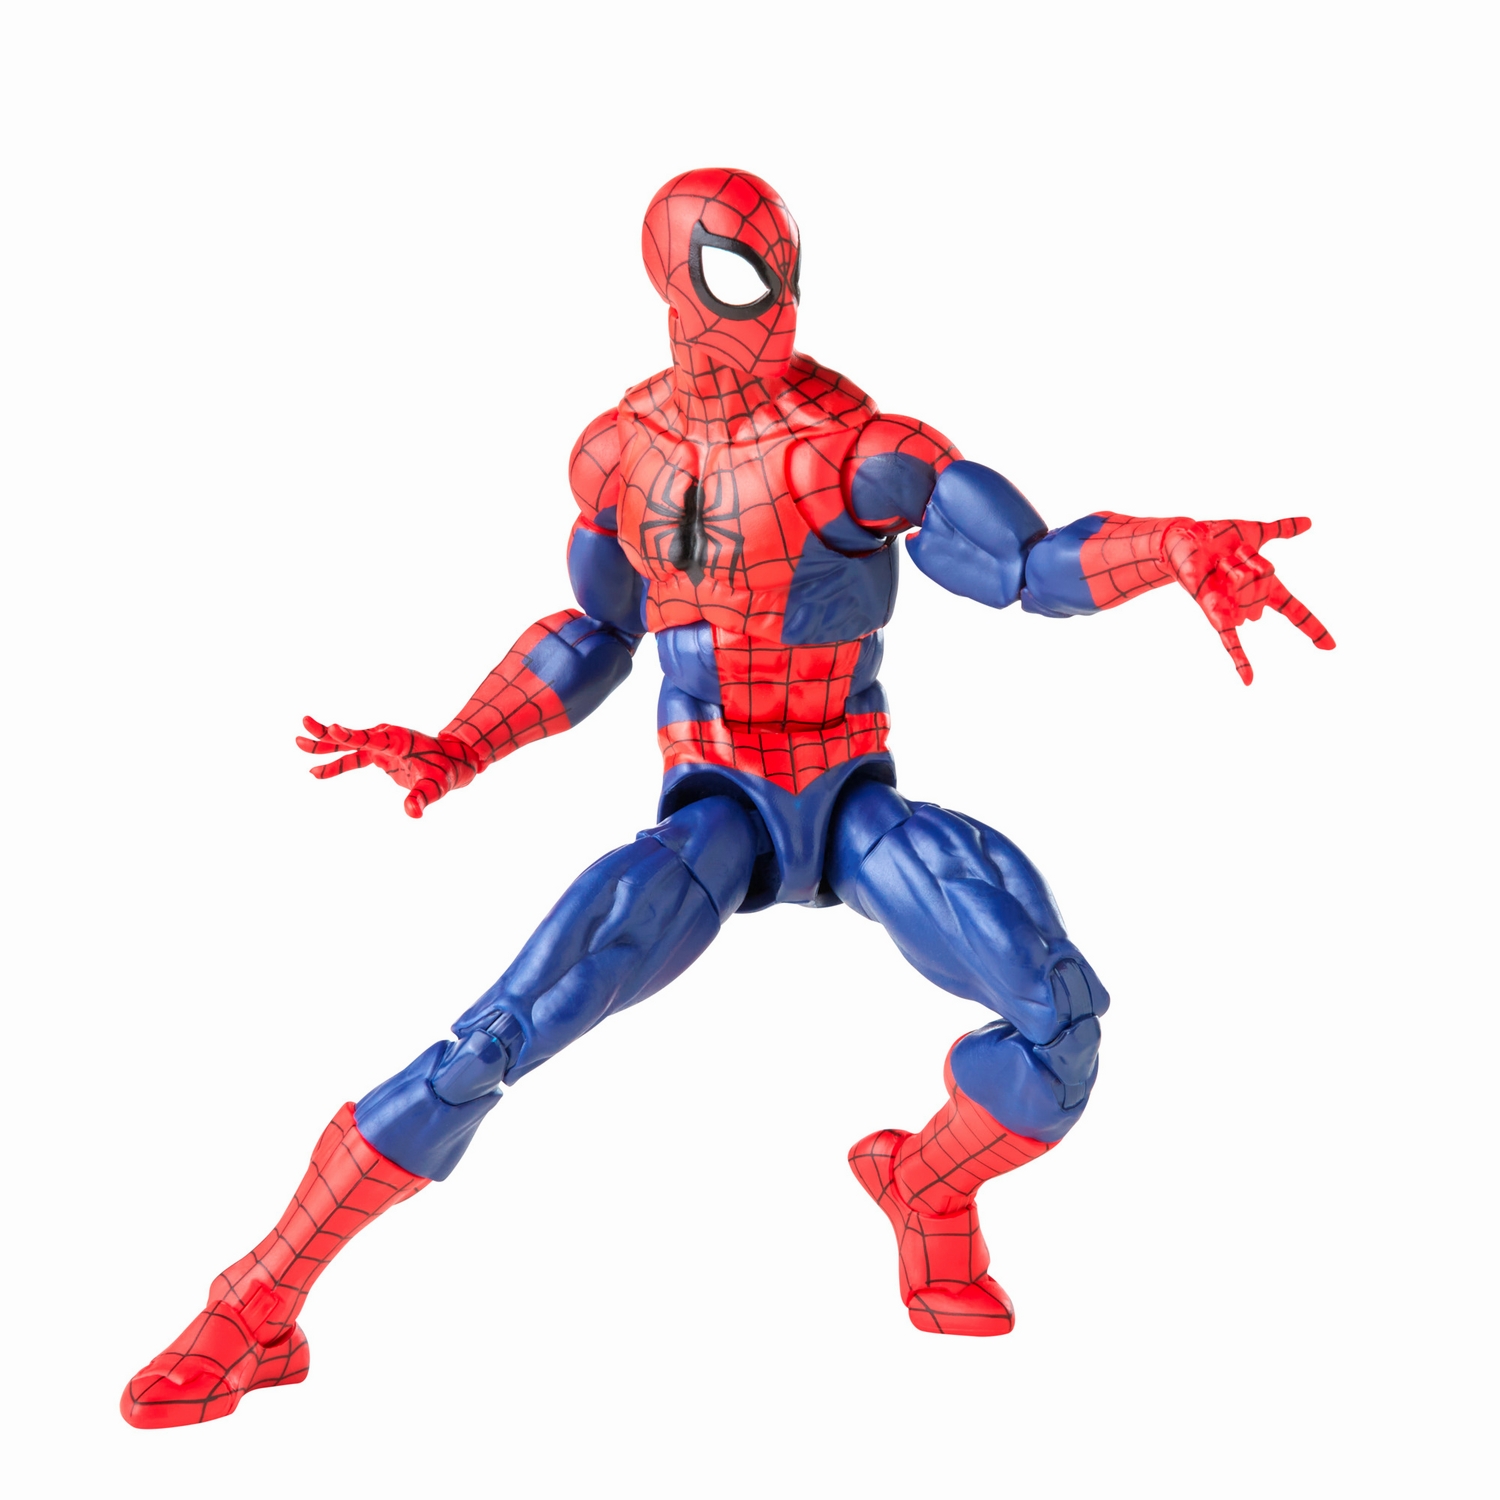 Marvel Legends Series Spider-Man and Marvel’s Spinneret - Image 15.jpg